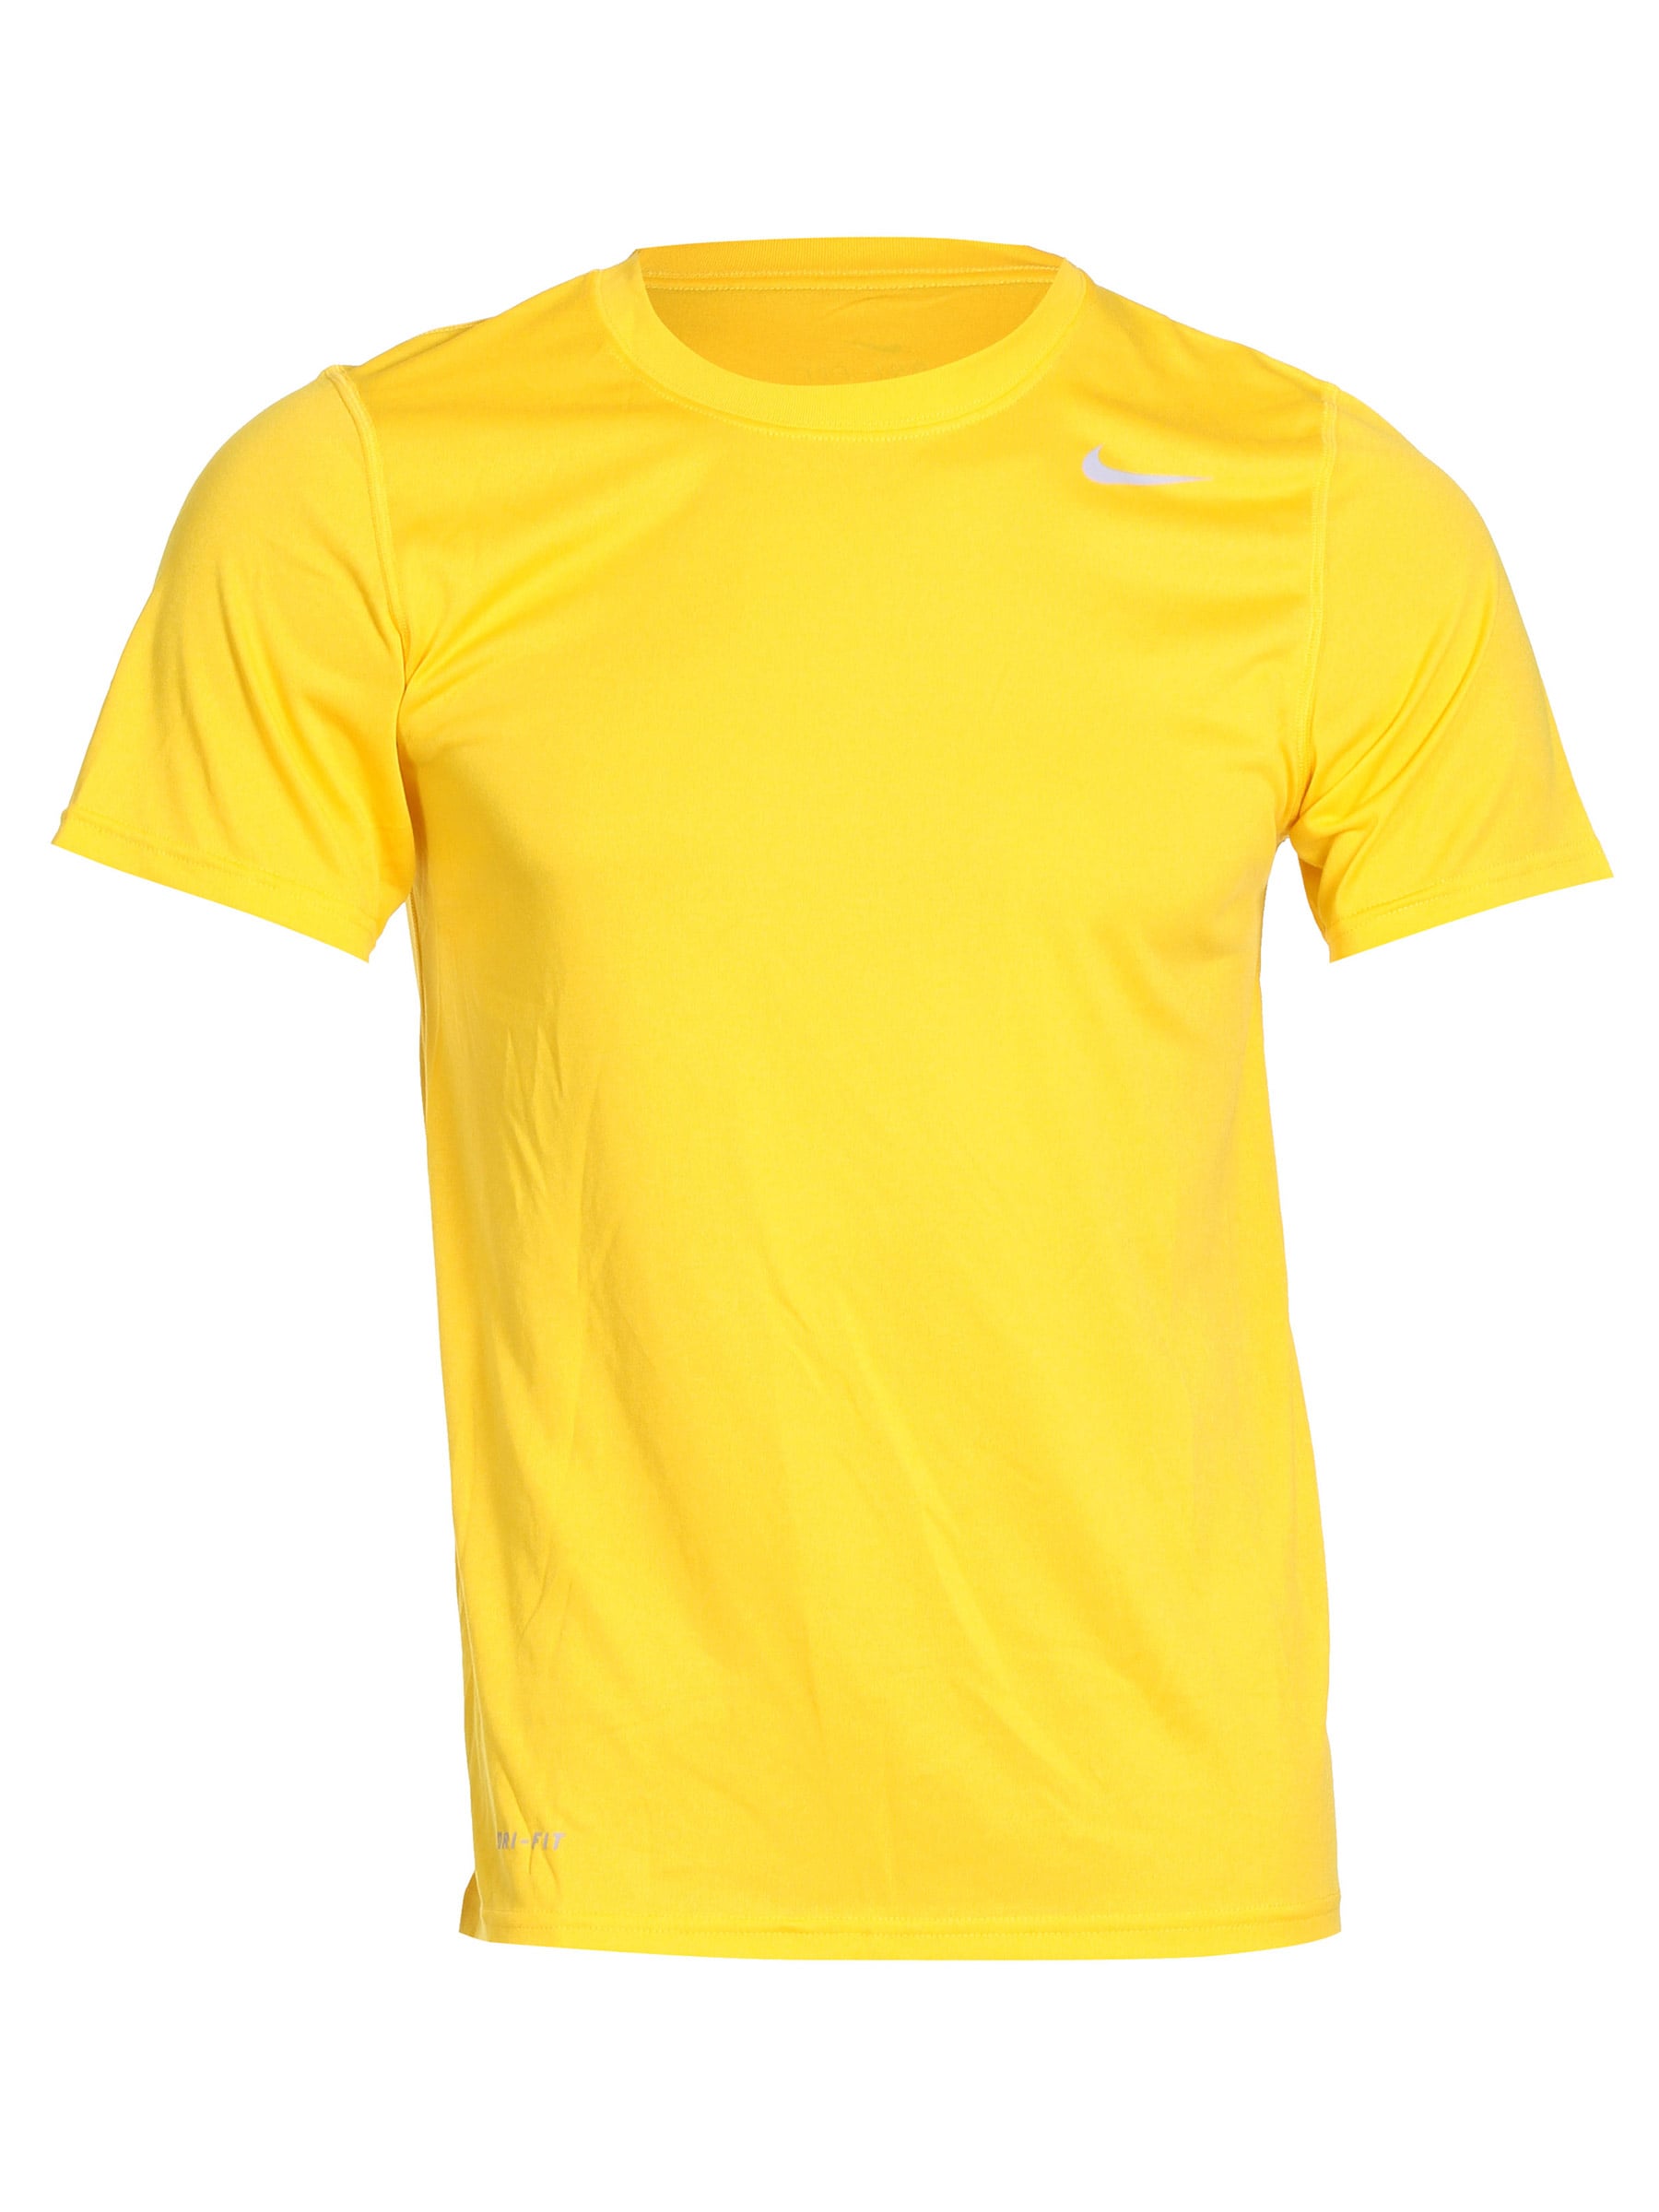 Nike Men Yellow T-shirt